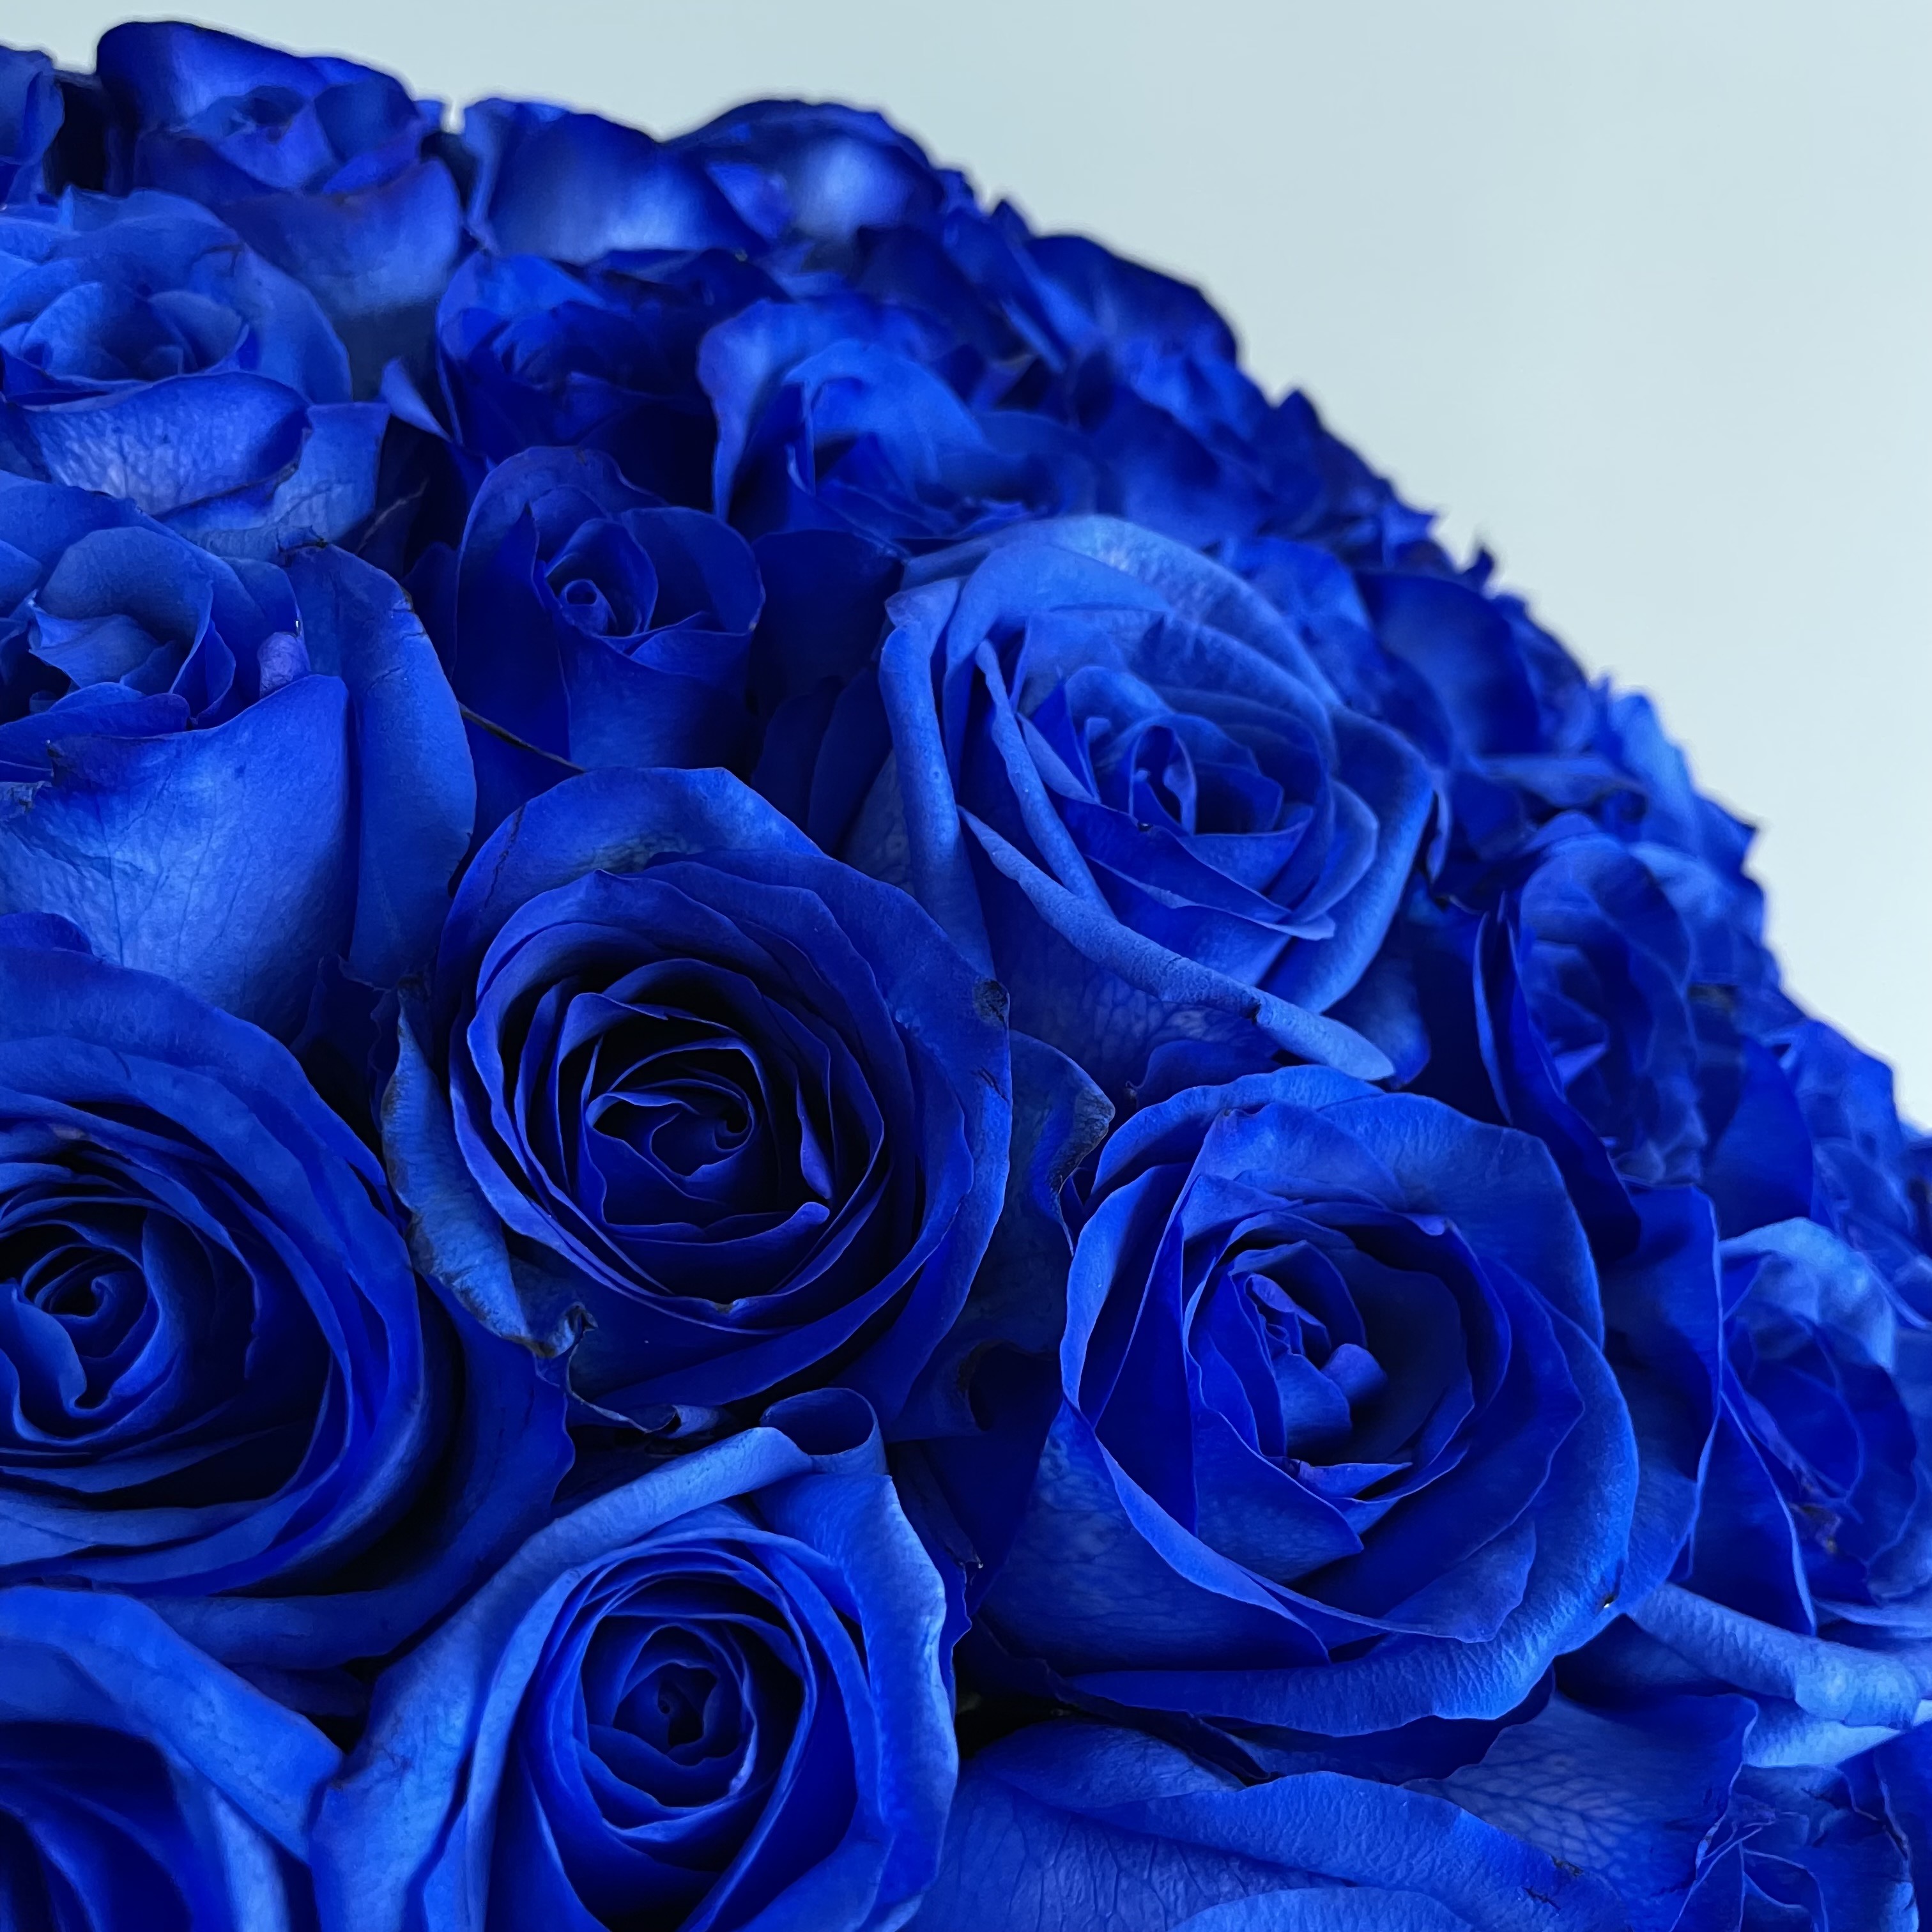 売れ筋がひ ブルーローズ 青い薔薇 花束 50本のブルーローズブーケ Fucoa Cl